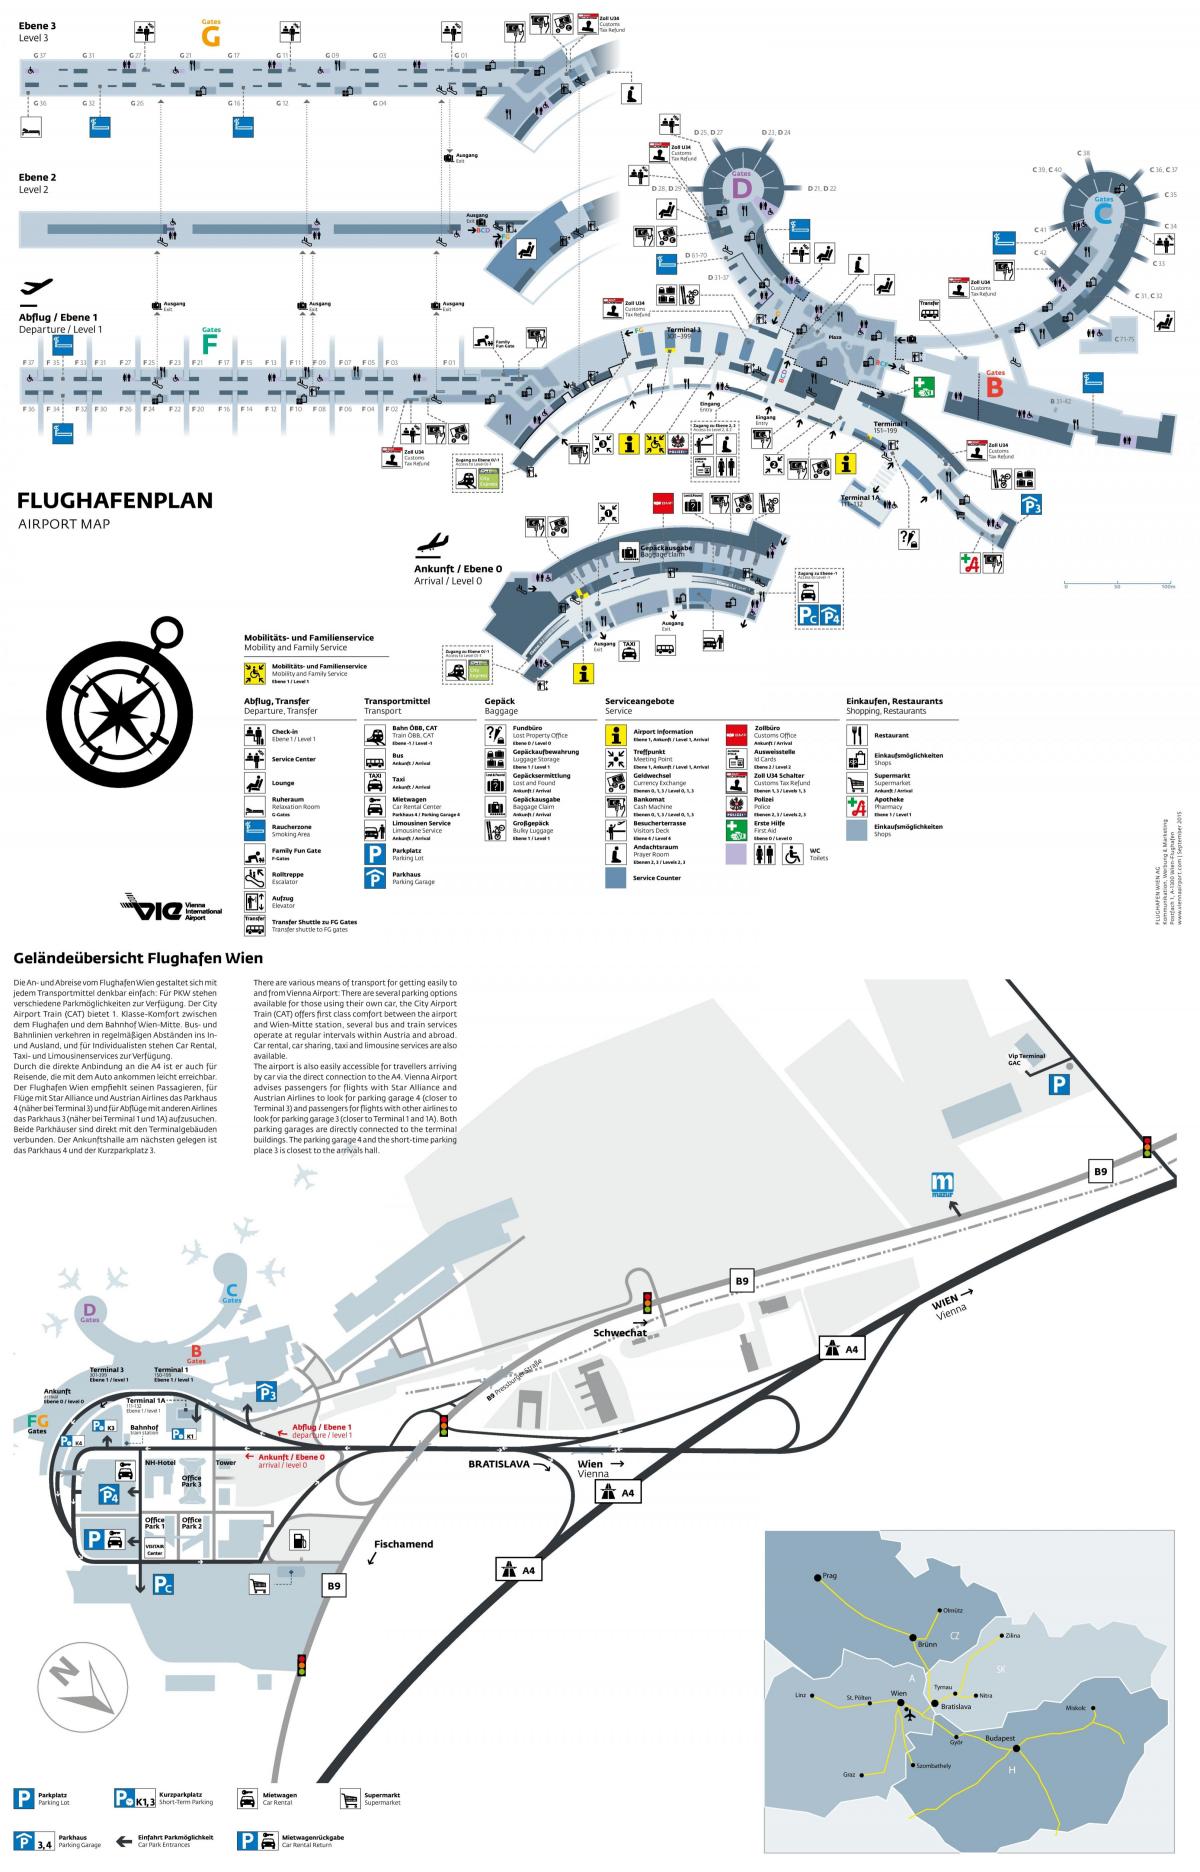 Венийн нисэх онгоцны буудал явах нь газрын зураг